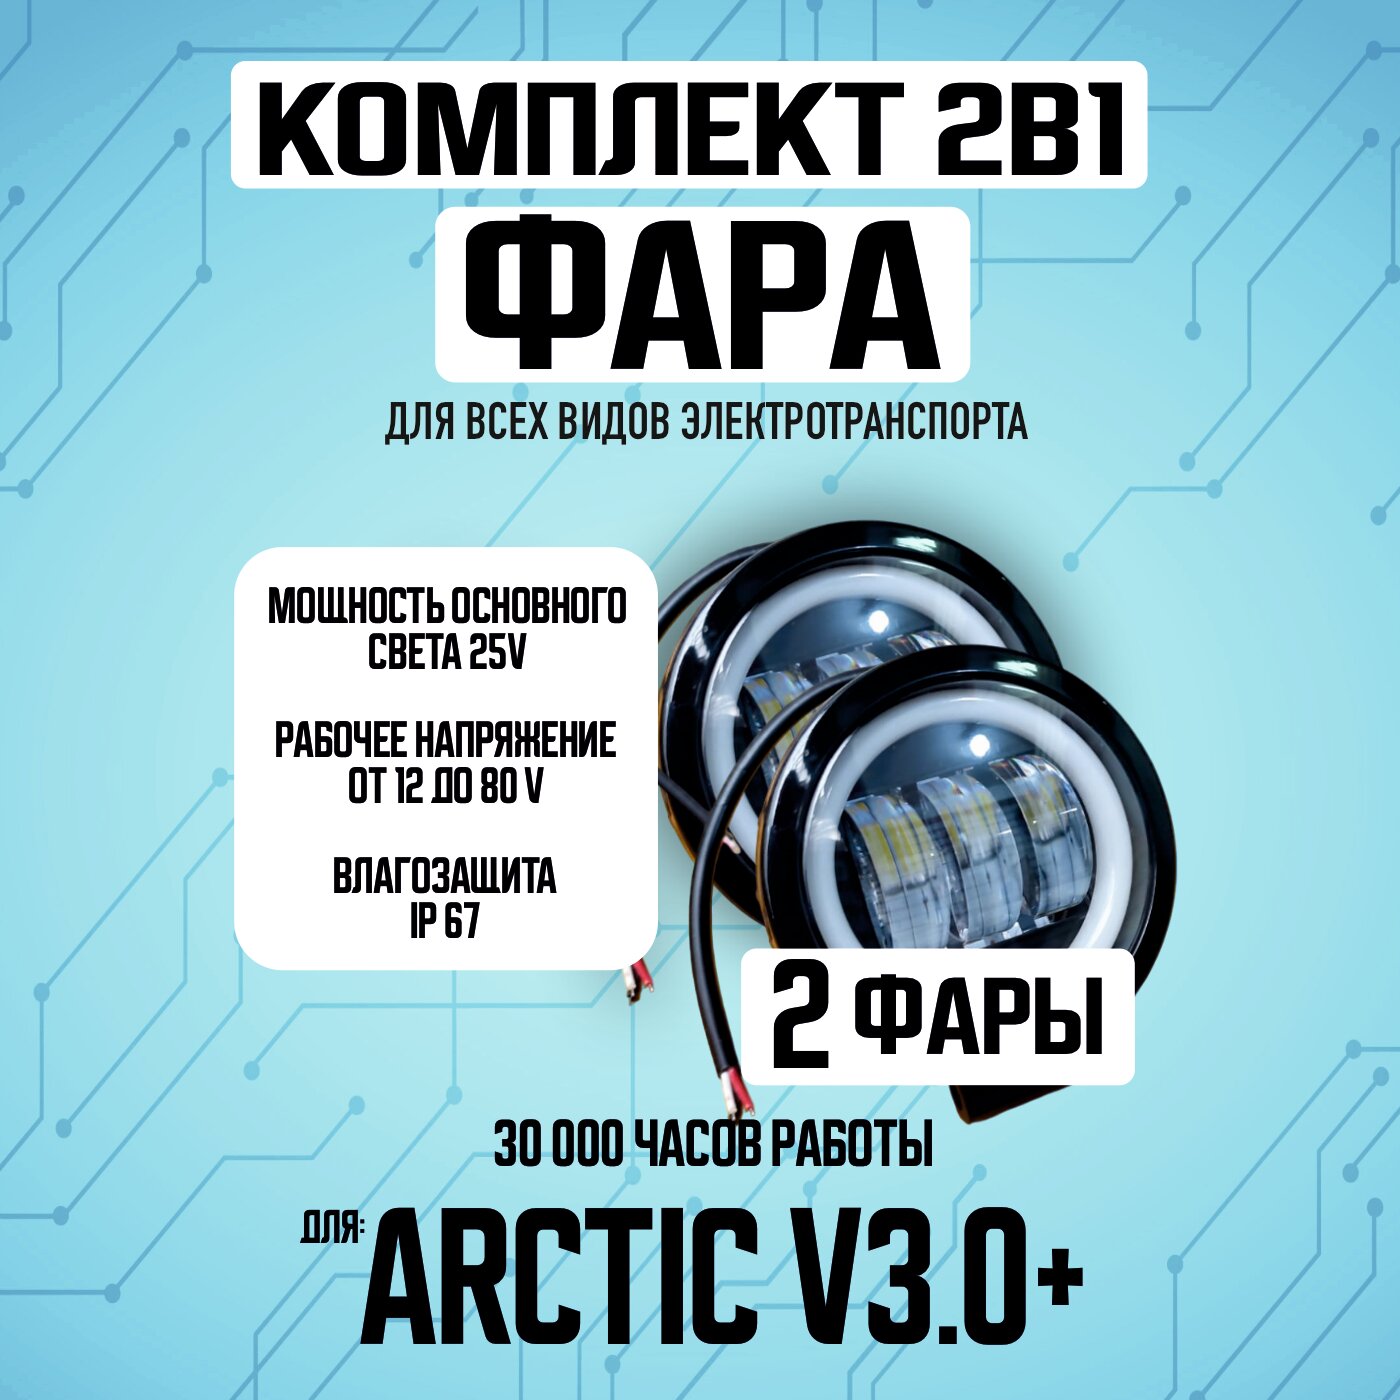 Противотуманная светодиодная фара Arctic v3.0+ для всех видов электротранспорта / Круглой формы / 2 диода птф дхо, 2 штуки